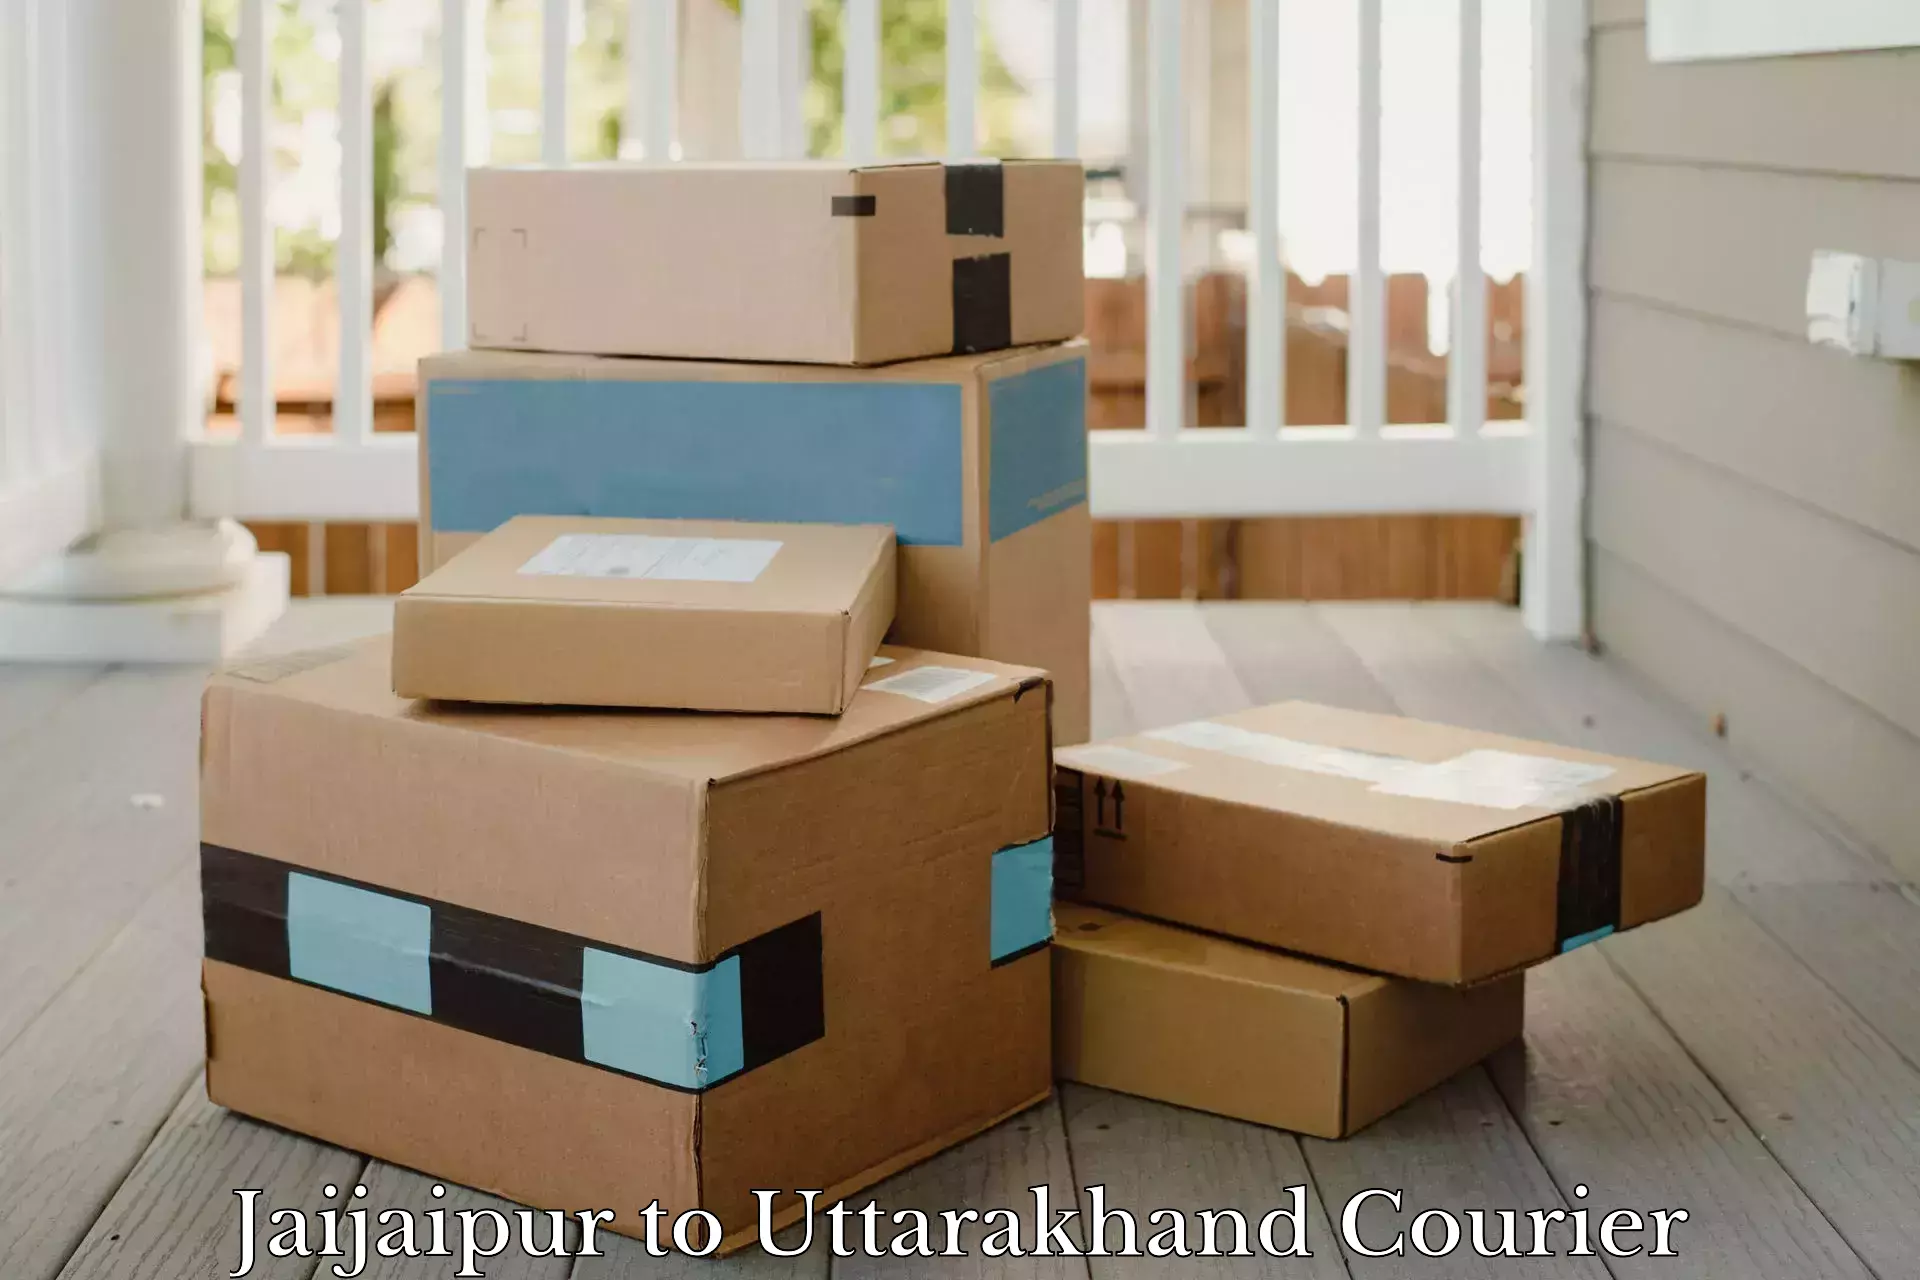 Multi-city courier Jaijaipur to Rudrapur